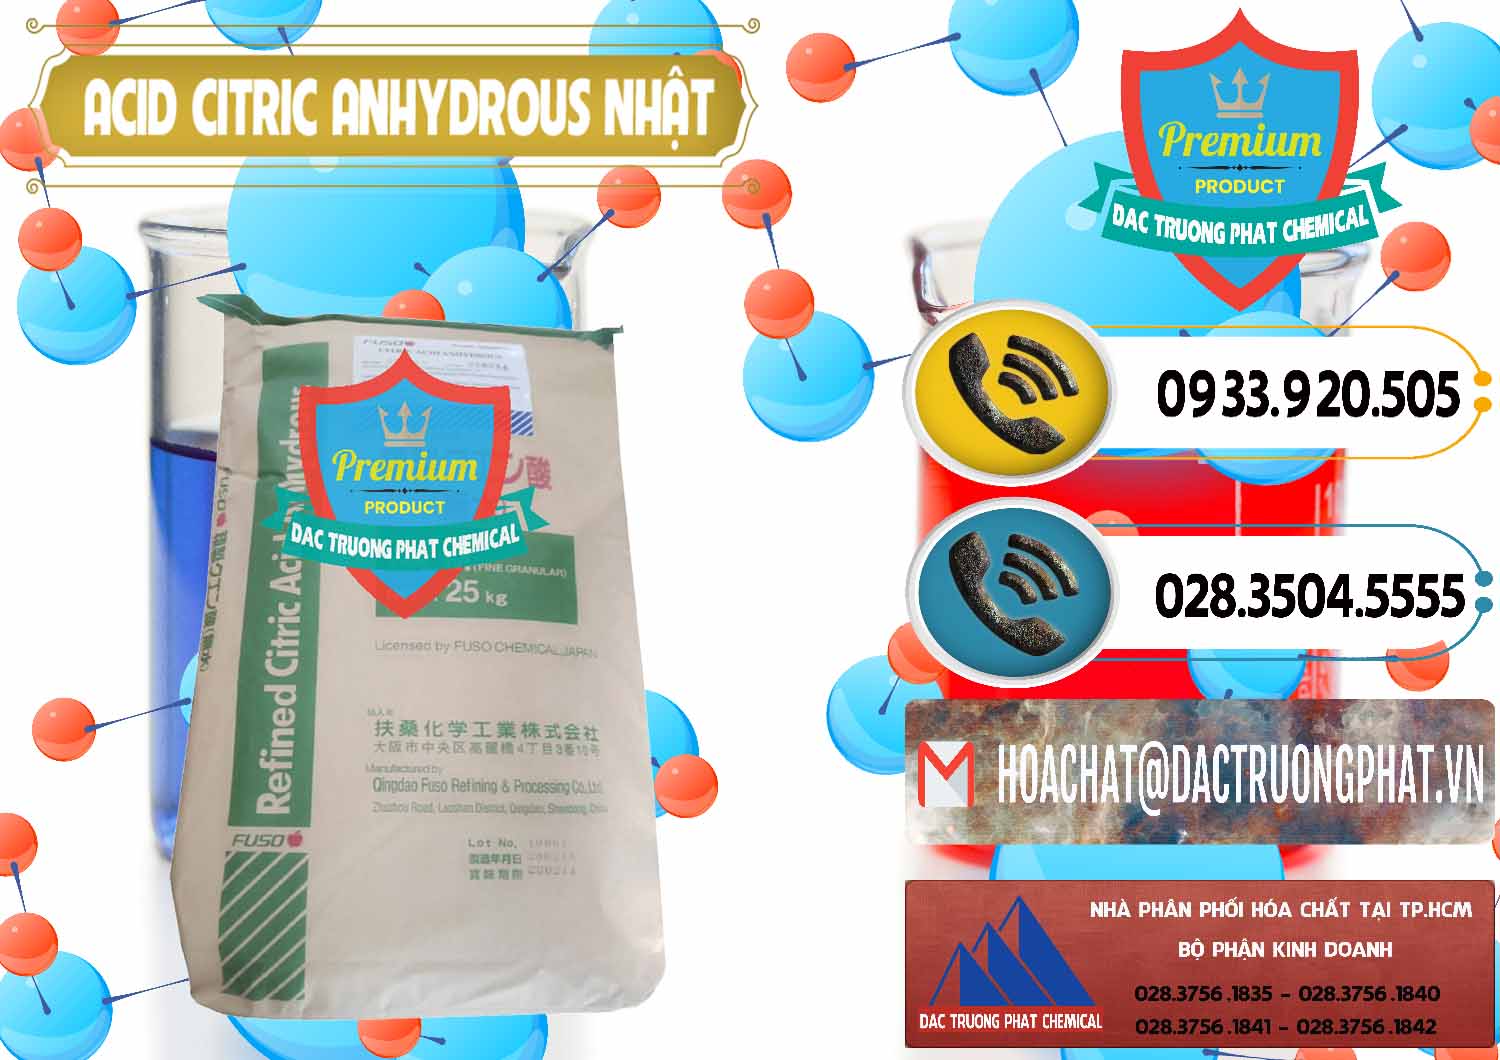 Nơi chuyên cung cấp và bán Acid Citric - Axit Citric Anhydrous FUSO Nhật Japan - 0439 - Đơn vị chuyên cung ứng - phân phối hóa chất tại TP.HCM - hoachatdetnhuom.vn